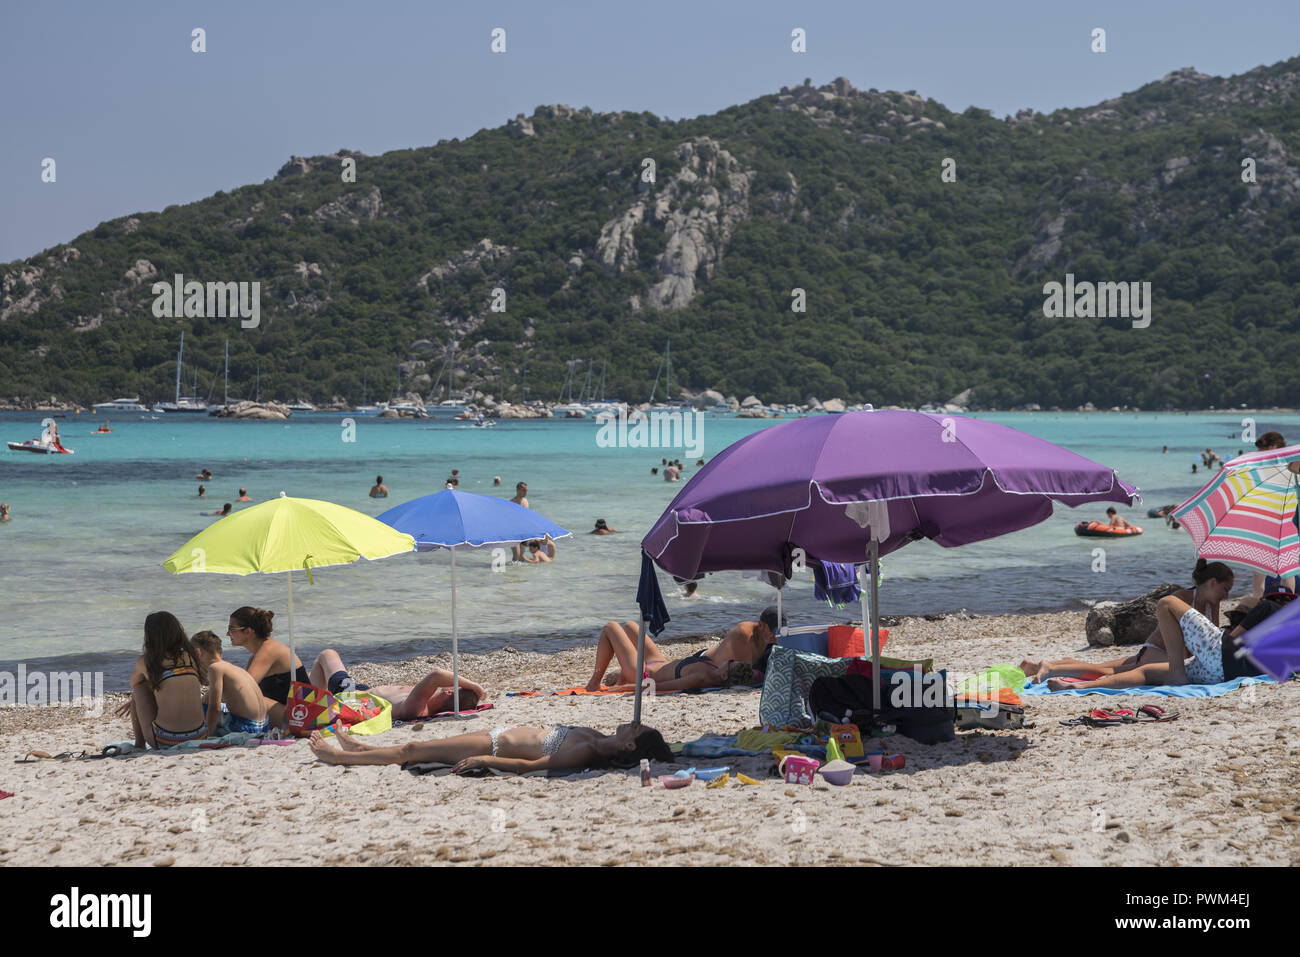 People relaxing on the beach and in the water. Beach of Santa Giulia in Corsica. Plaża Santa Giulia na Korsyce. Ludzie wypoczywający na plaży. Stock Photo